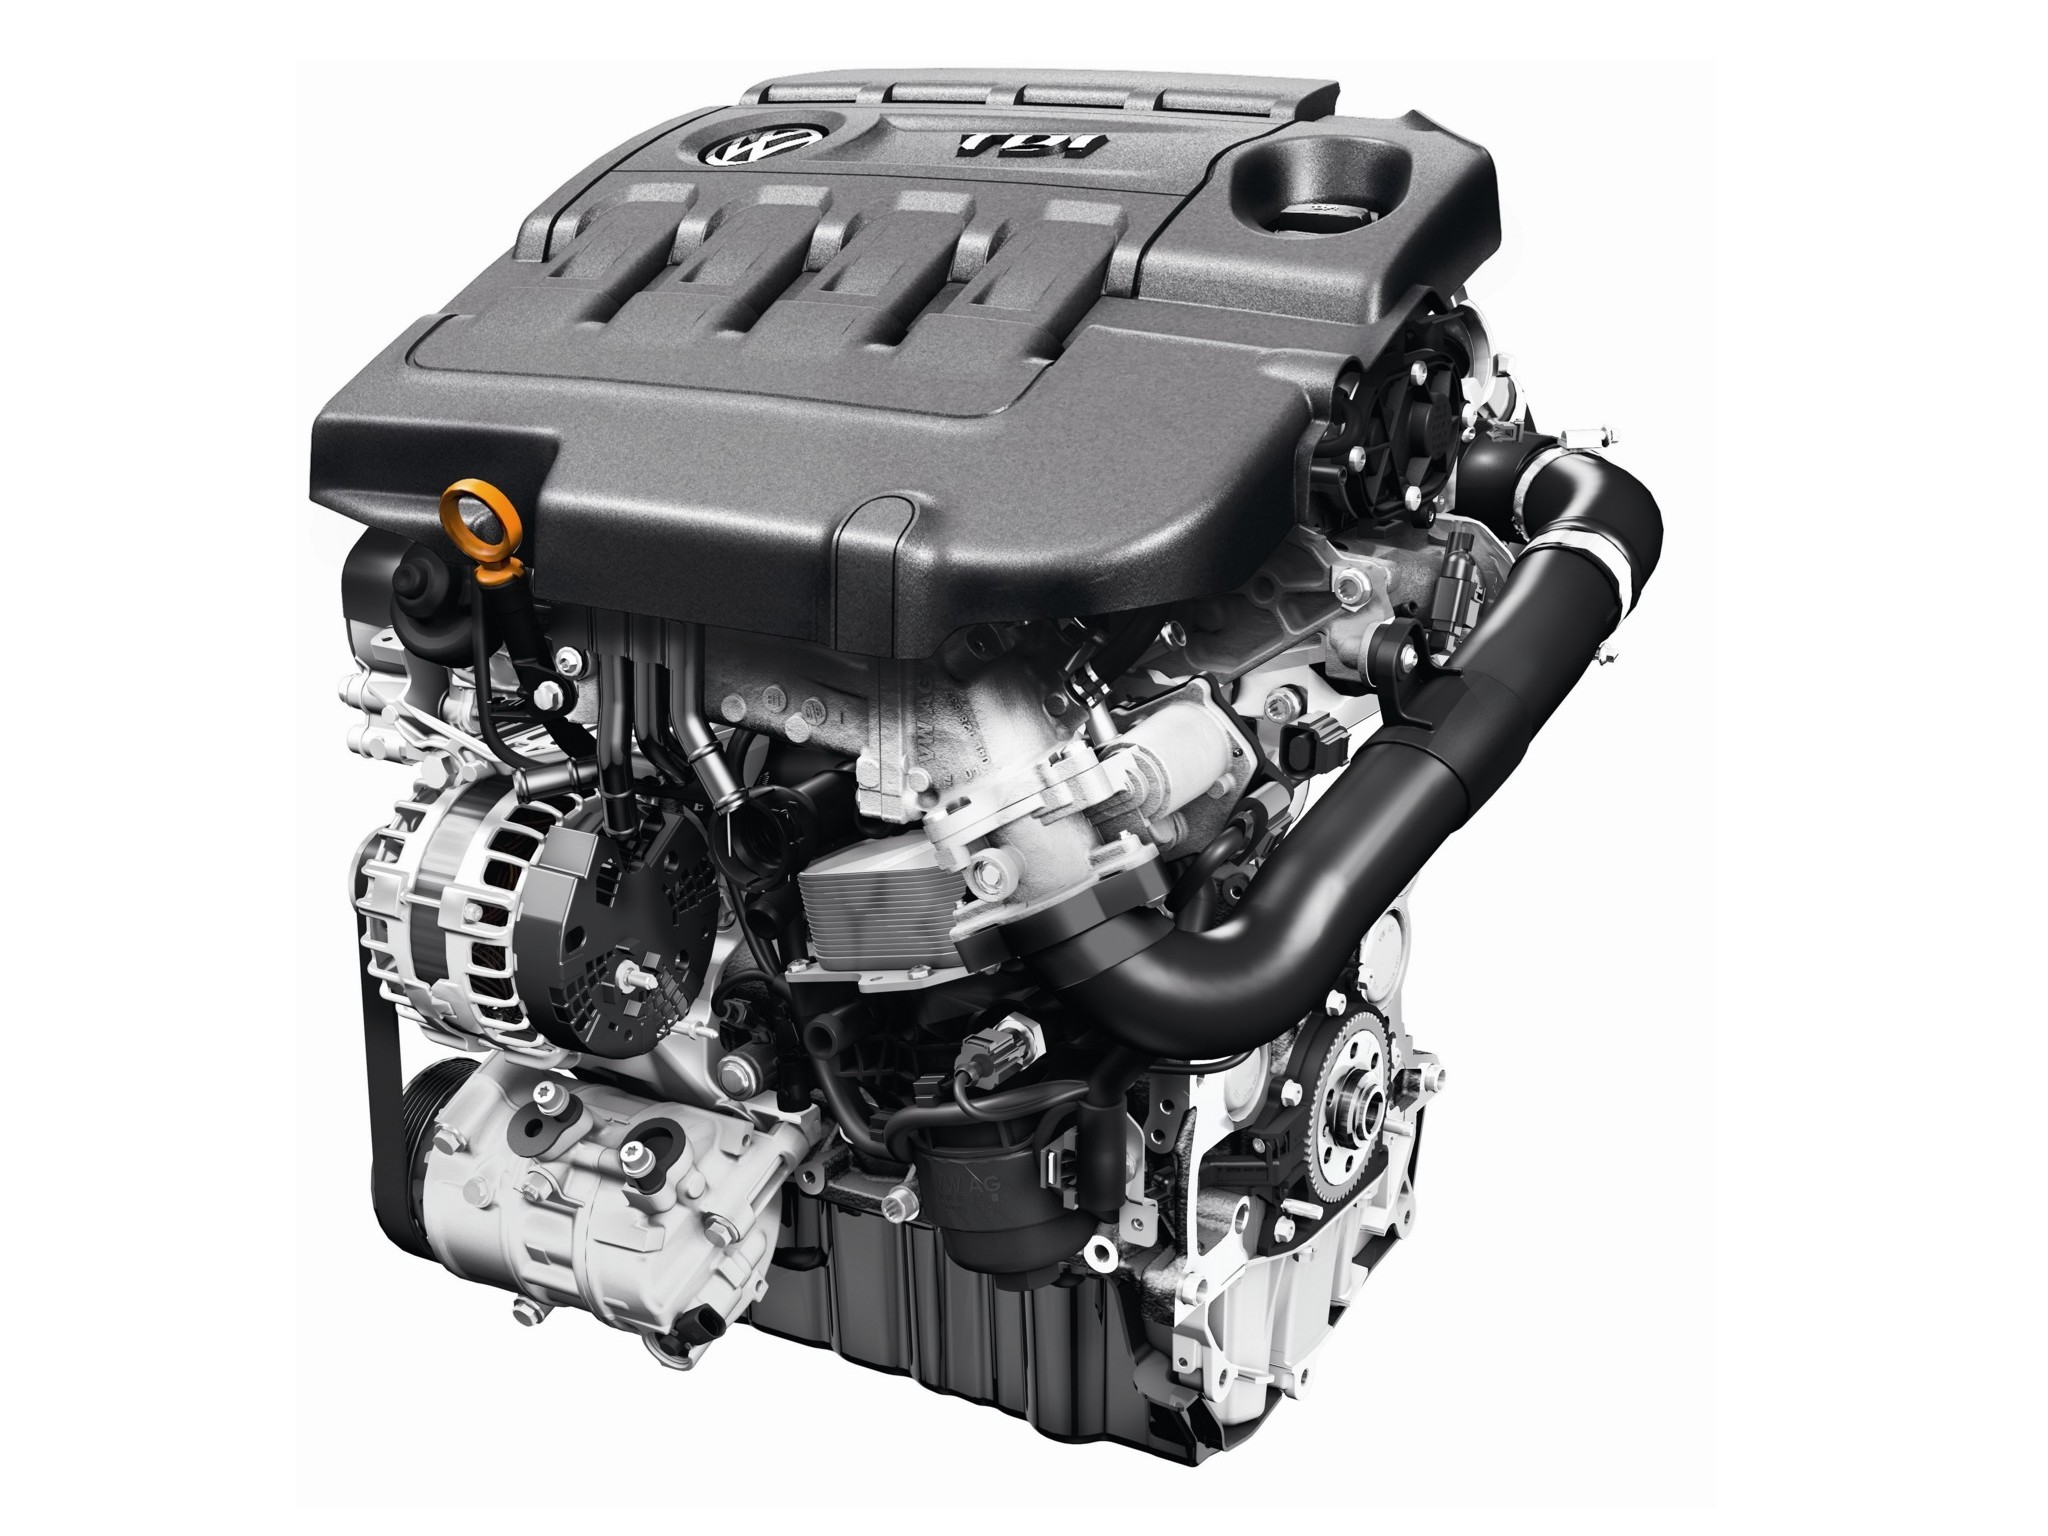 Tdi двигатель: Двигатели 2.0 TDI - серия турбодизелей Фольксваген